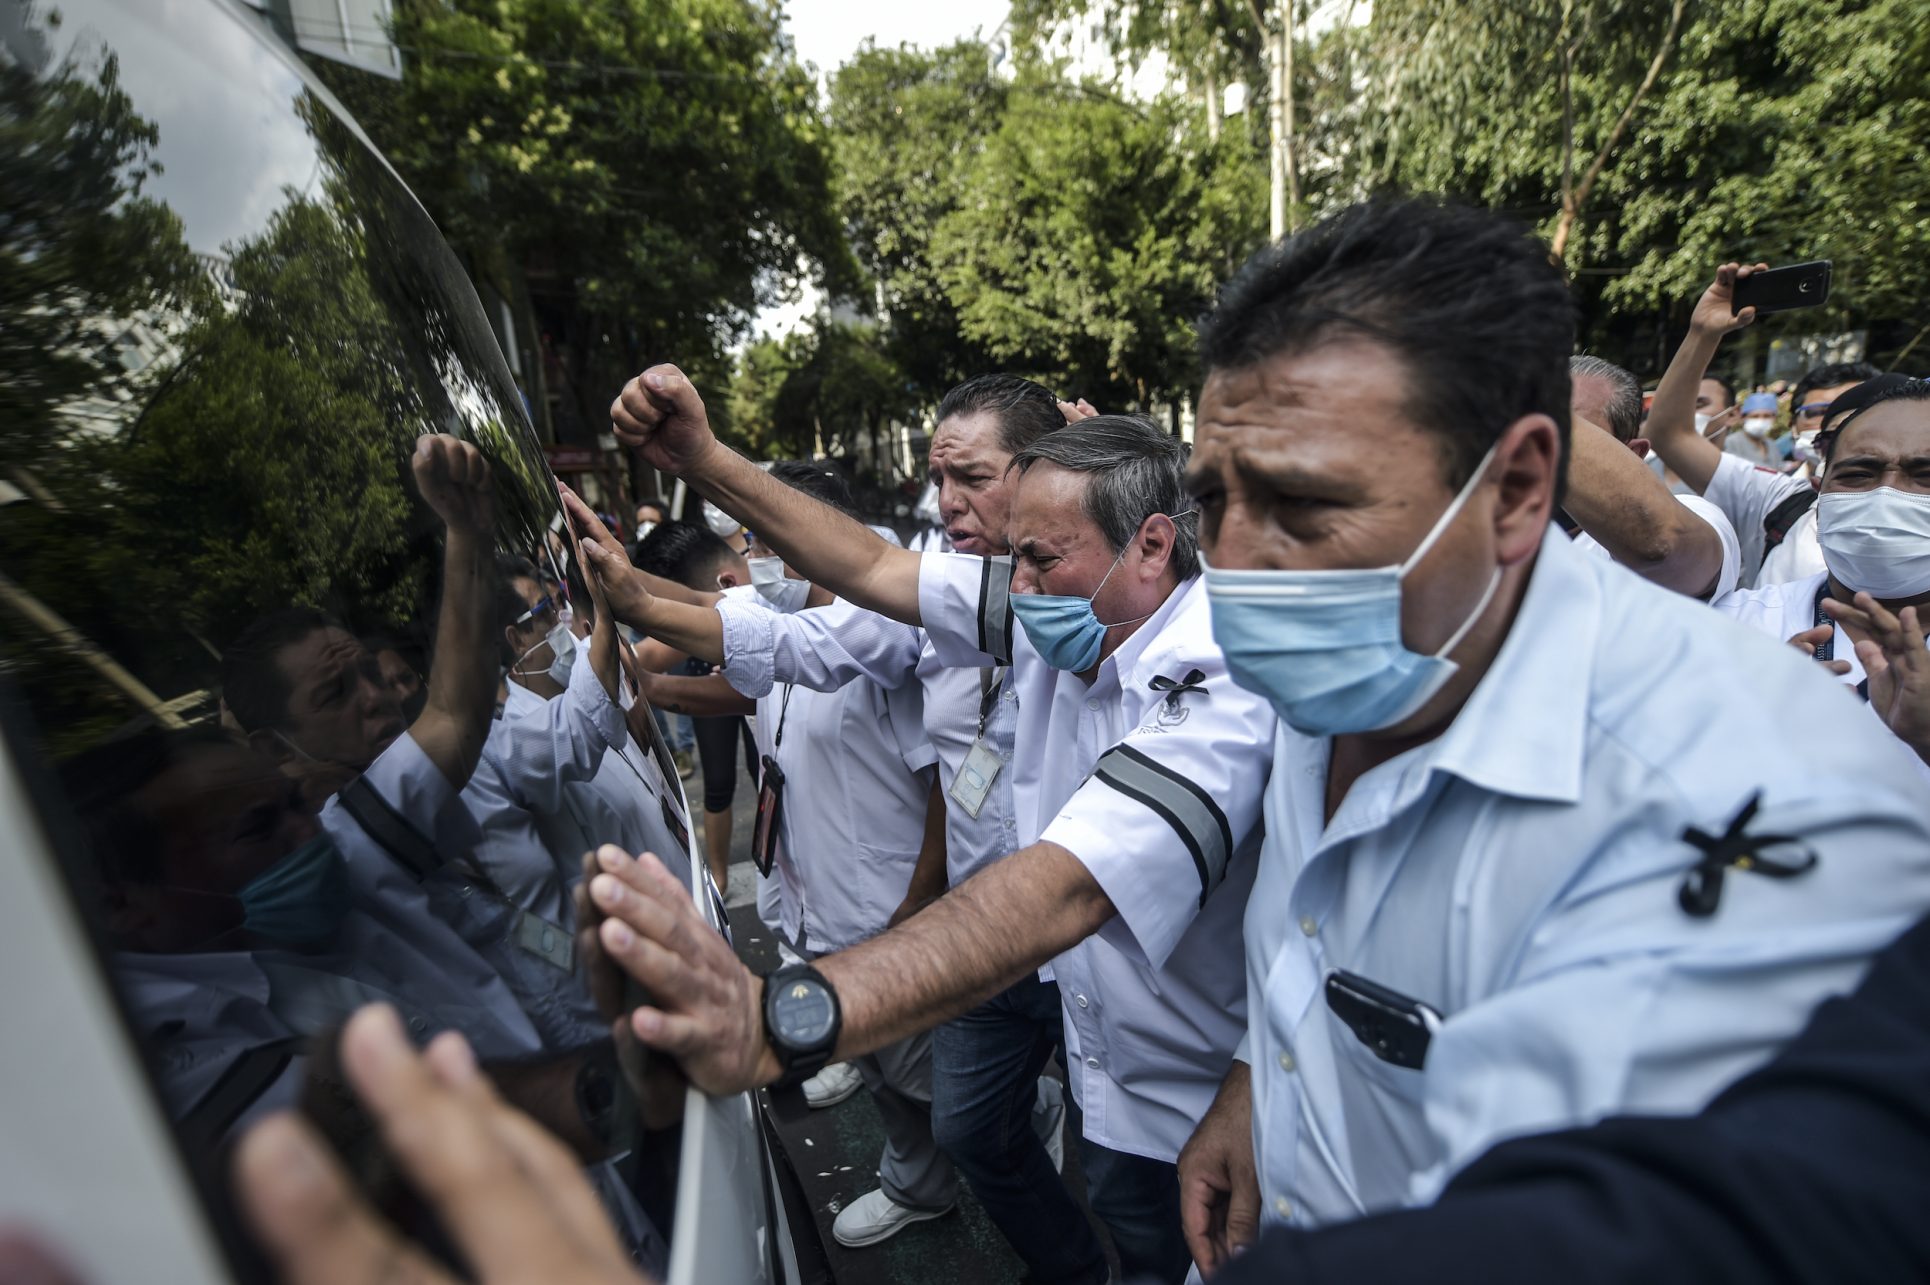 Los violentos ataques al personal de la salud en México: “No es necesario que nos aplaudan, simplemente que nos respeten”